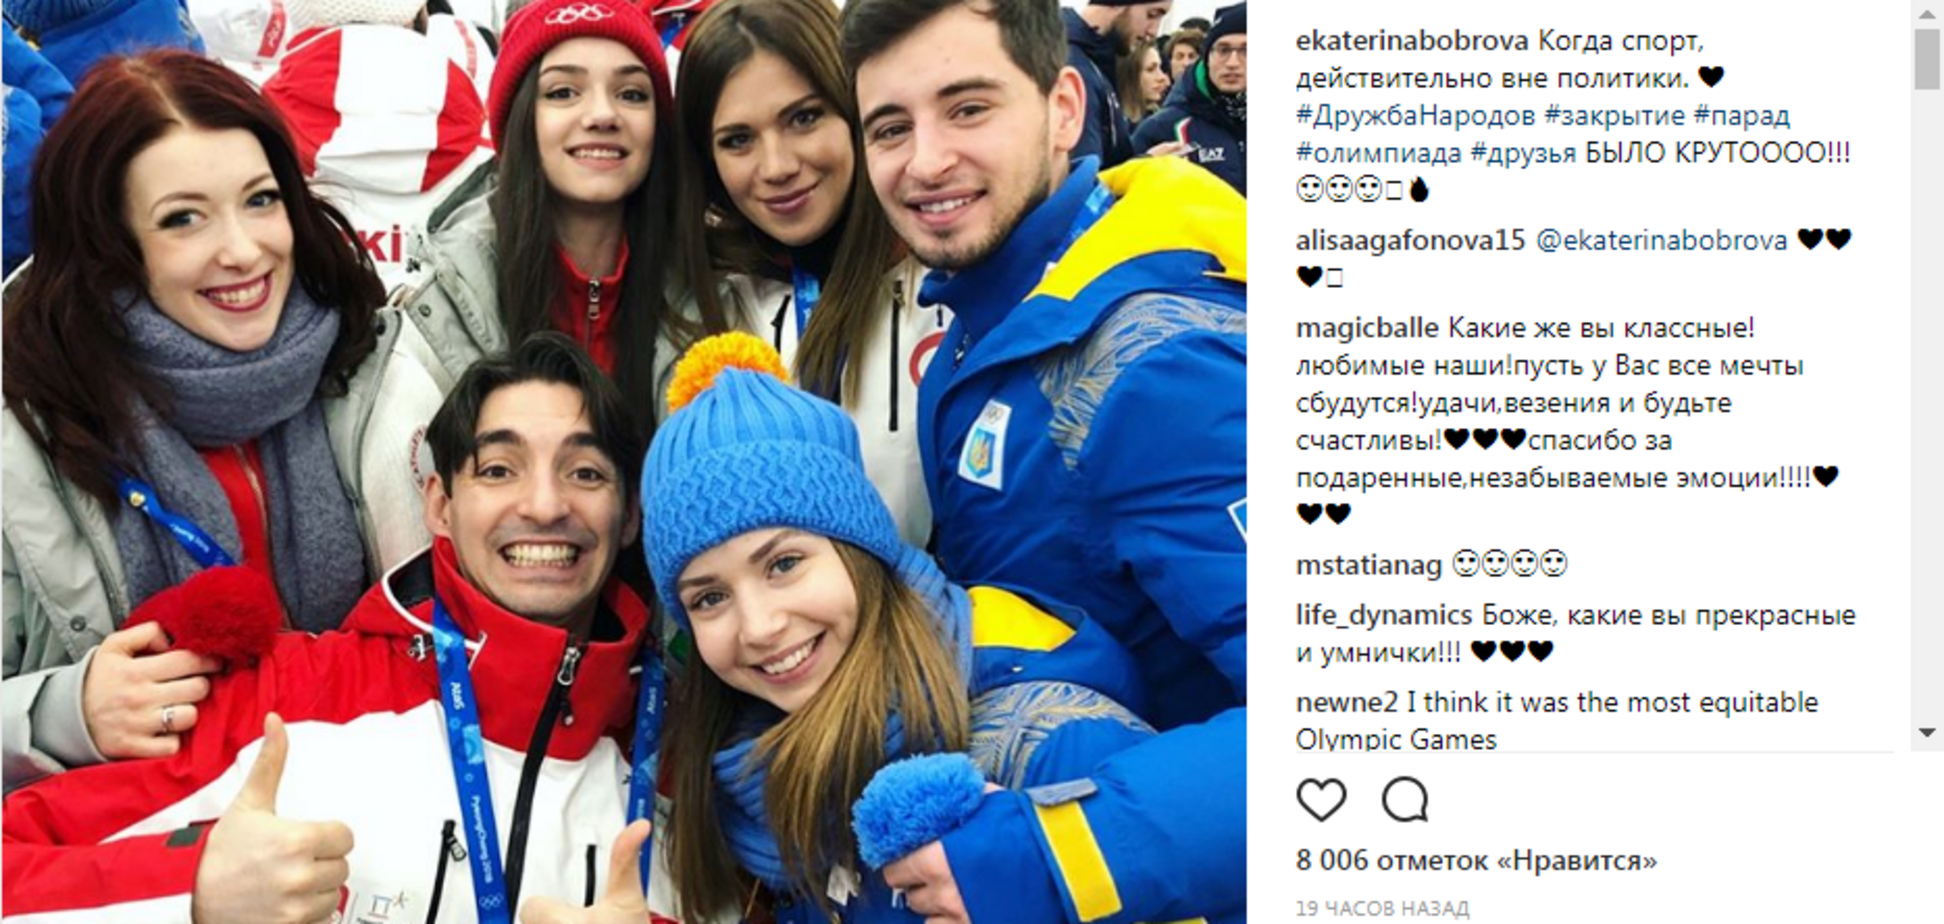 Олимпиада-2018: российская фигуристка сделала фото с украинцами